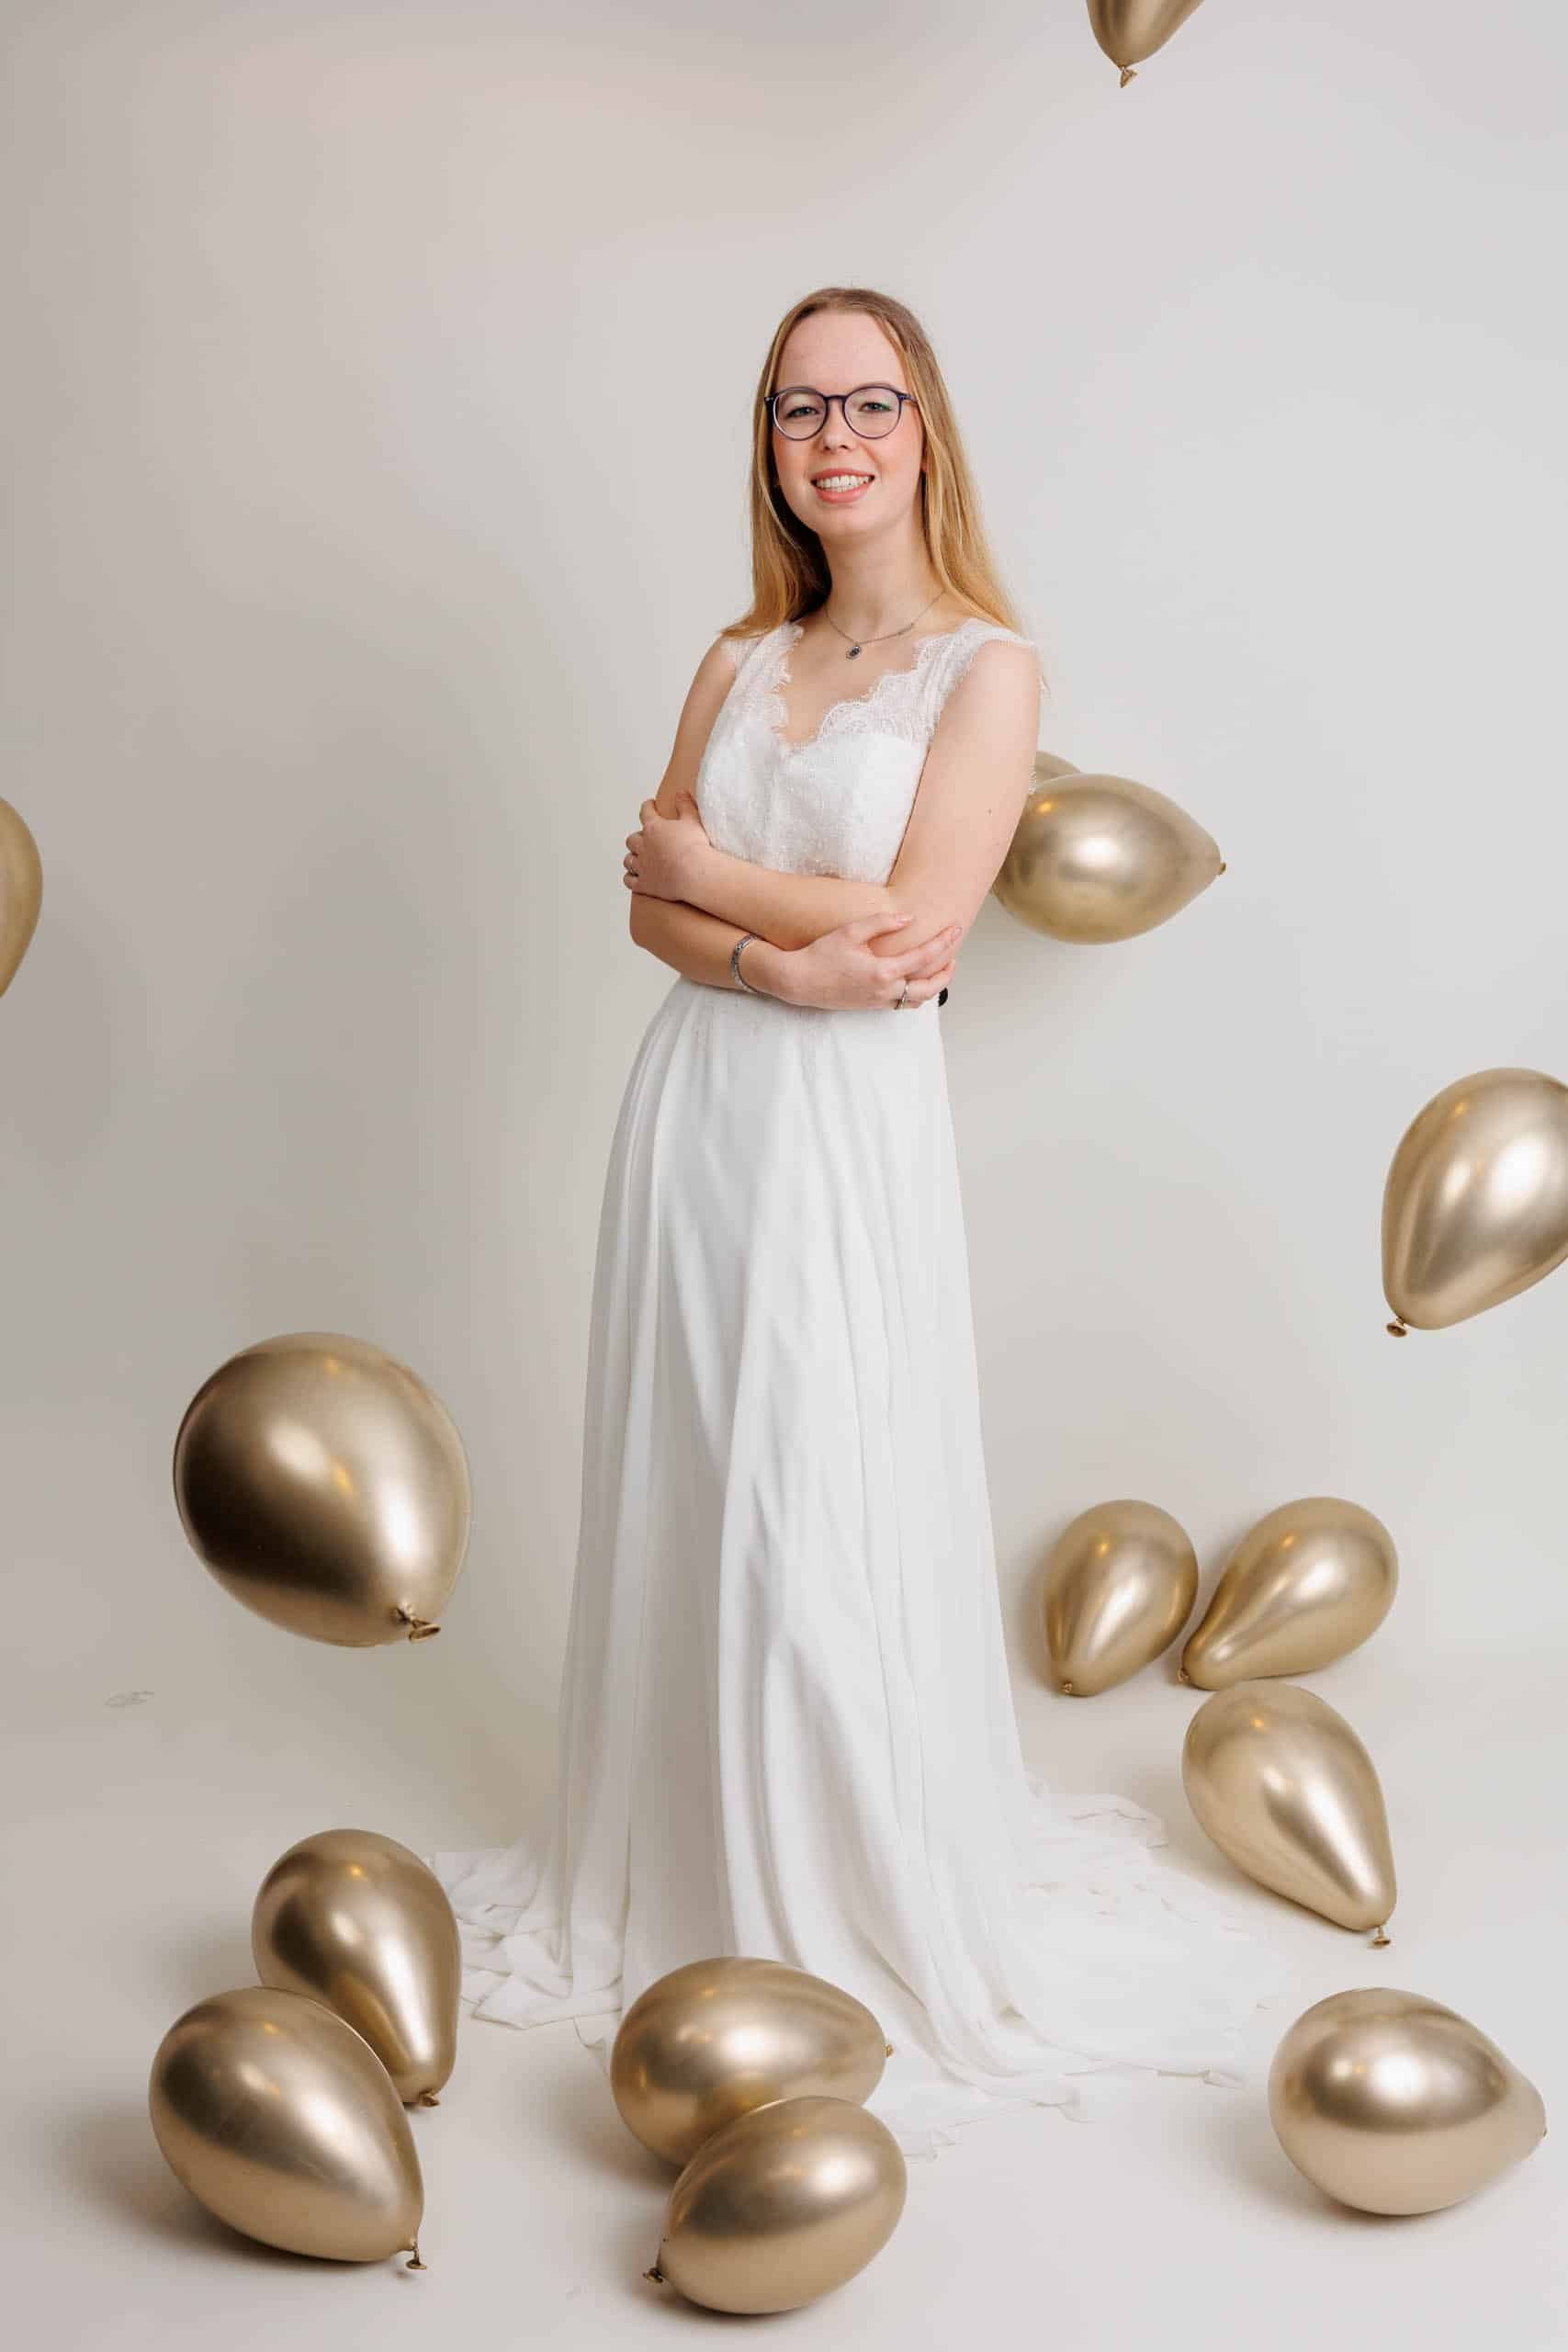 Een vrouw in een trouwjurk poseert voor gouden ballonnen terwijl ze voor de lol bruidsjurken past.